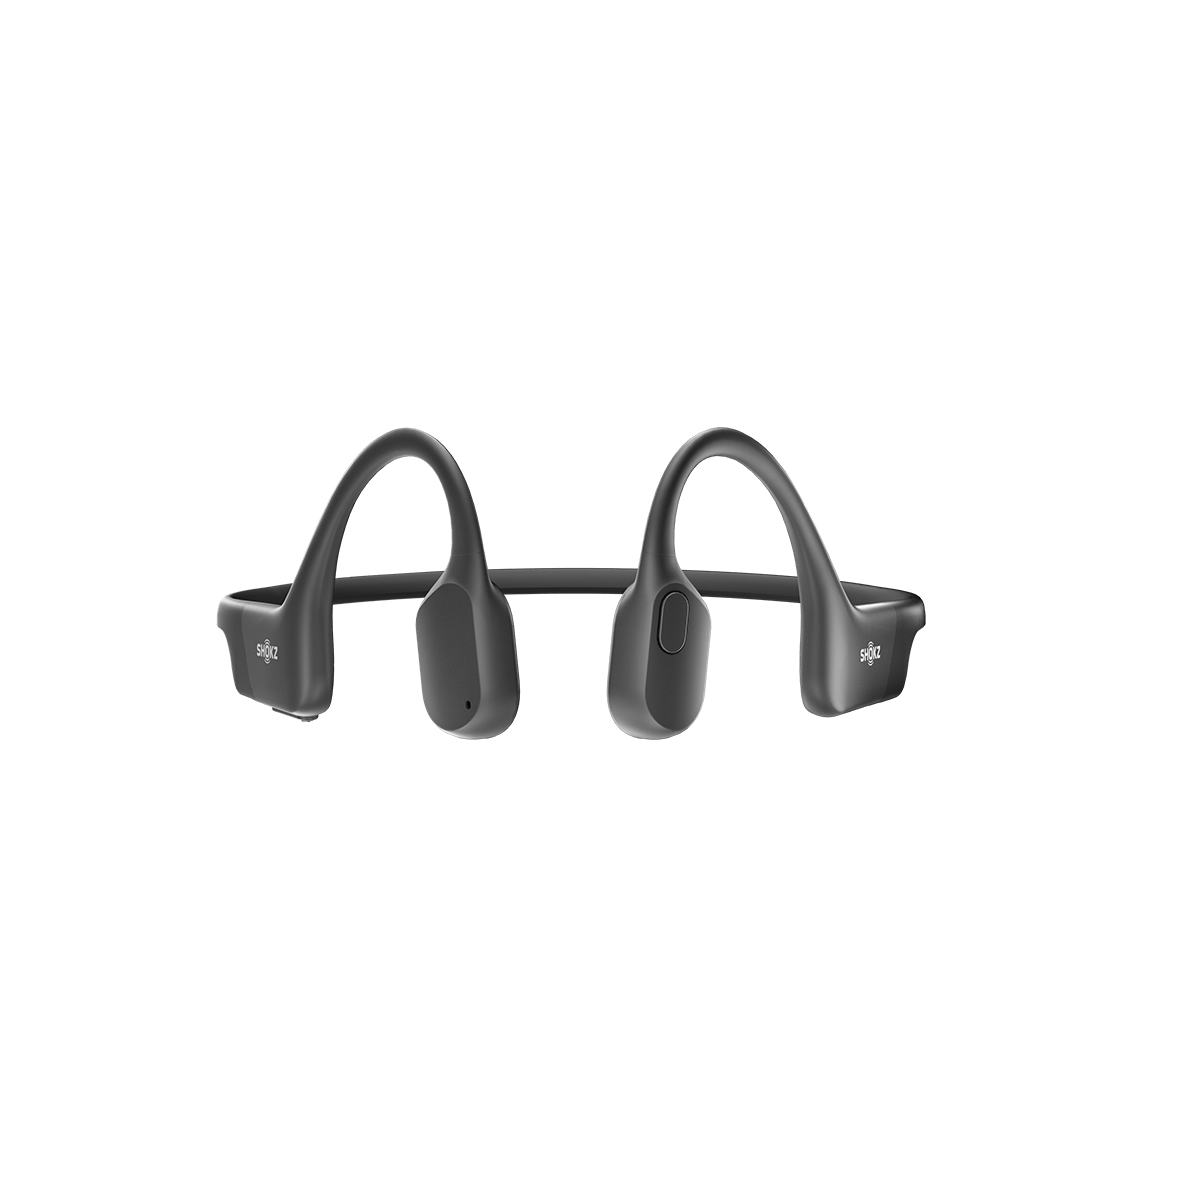 Shokz OpenRun - Auriculares deportivos Bluetooth de conducción ósea de  oreja abierta, auriculares inalámbricos resistentes al sudor para  entrenamientos y correr, micrófono integrado, con diadema : Electrónica 